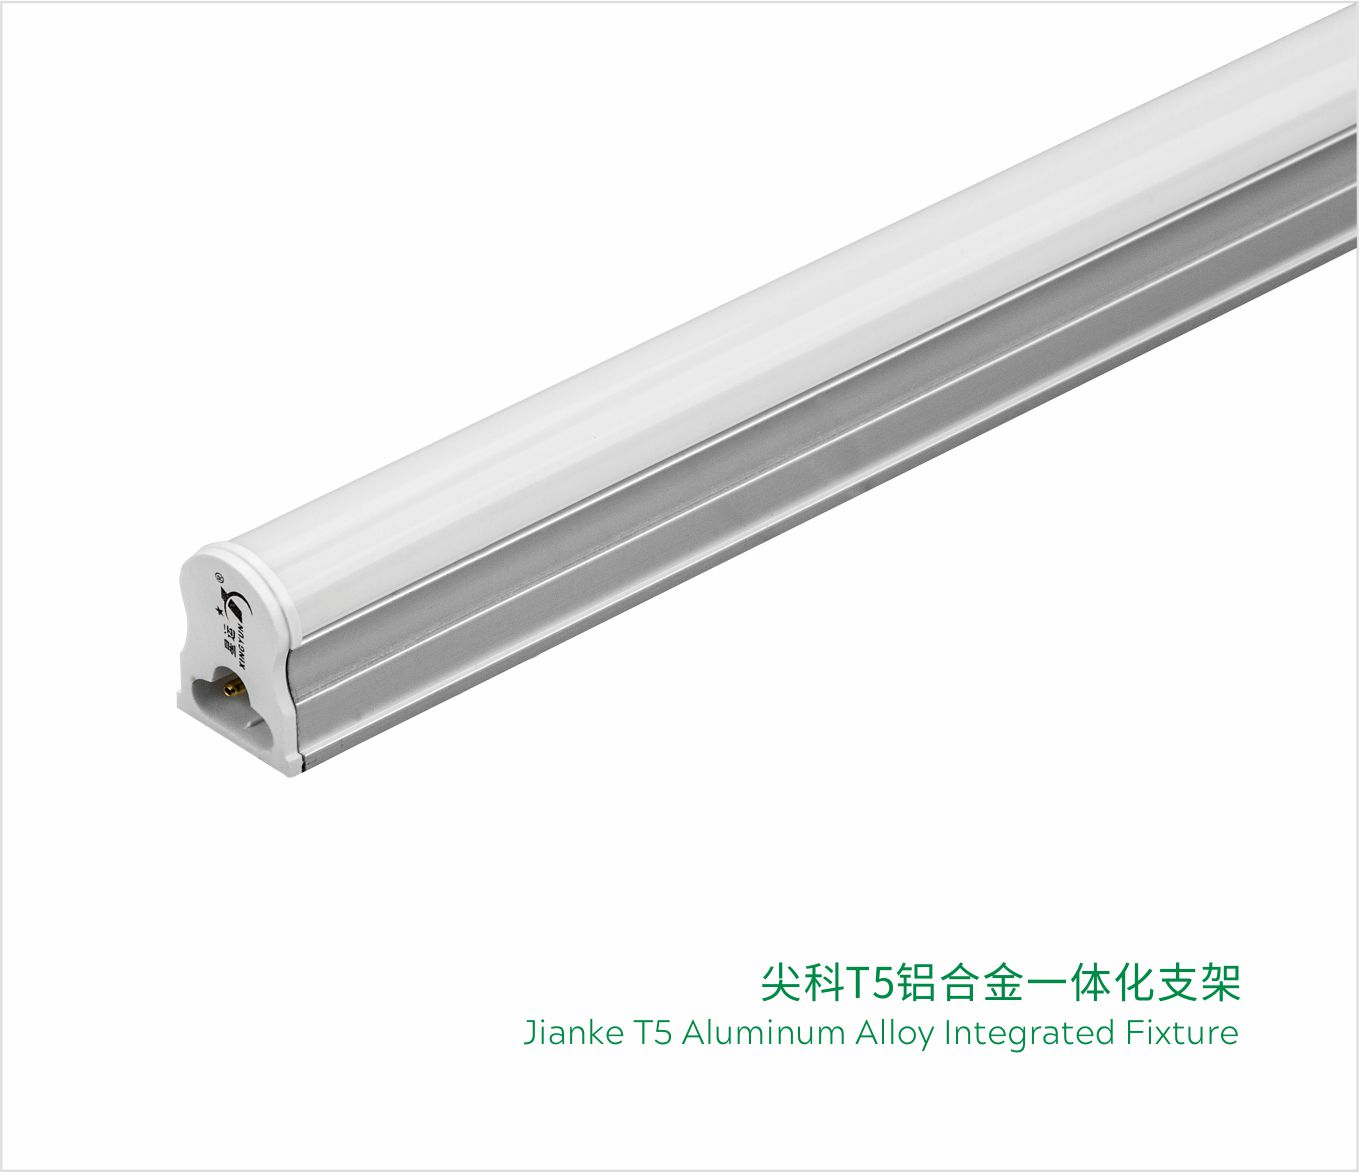 Aluminum Alloy Integrated Fixture